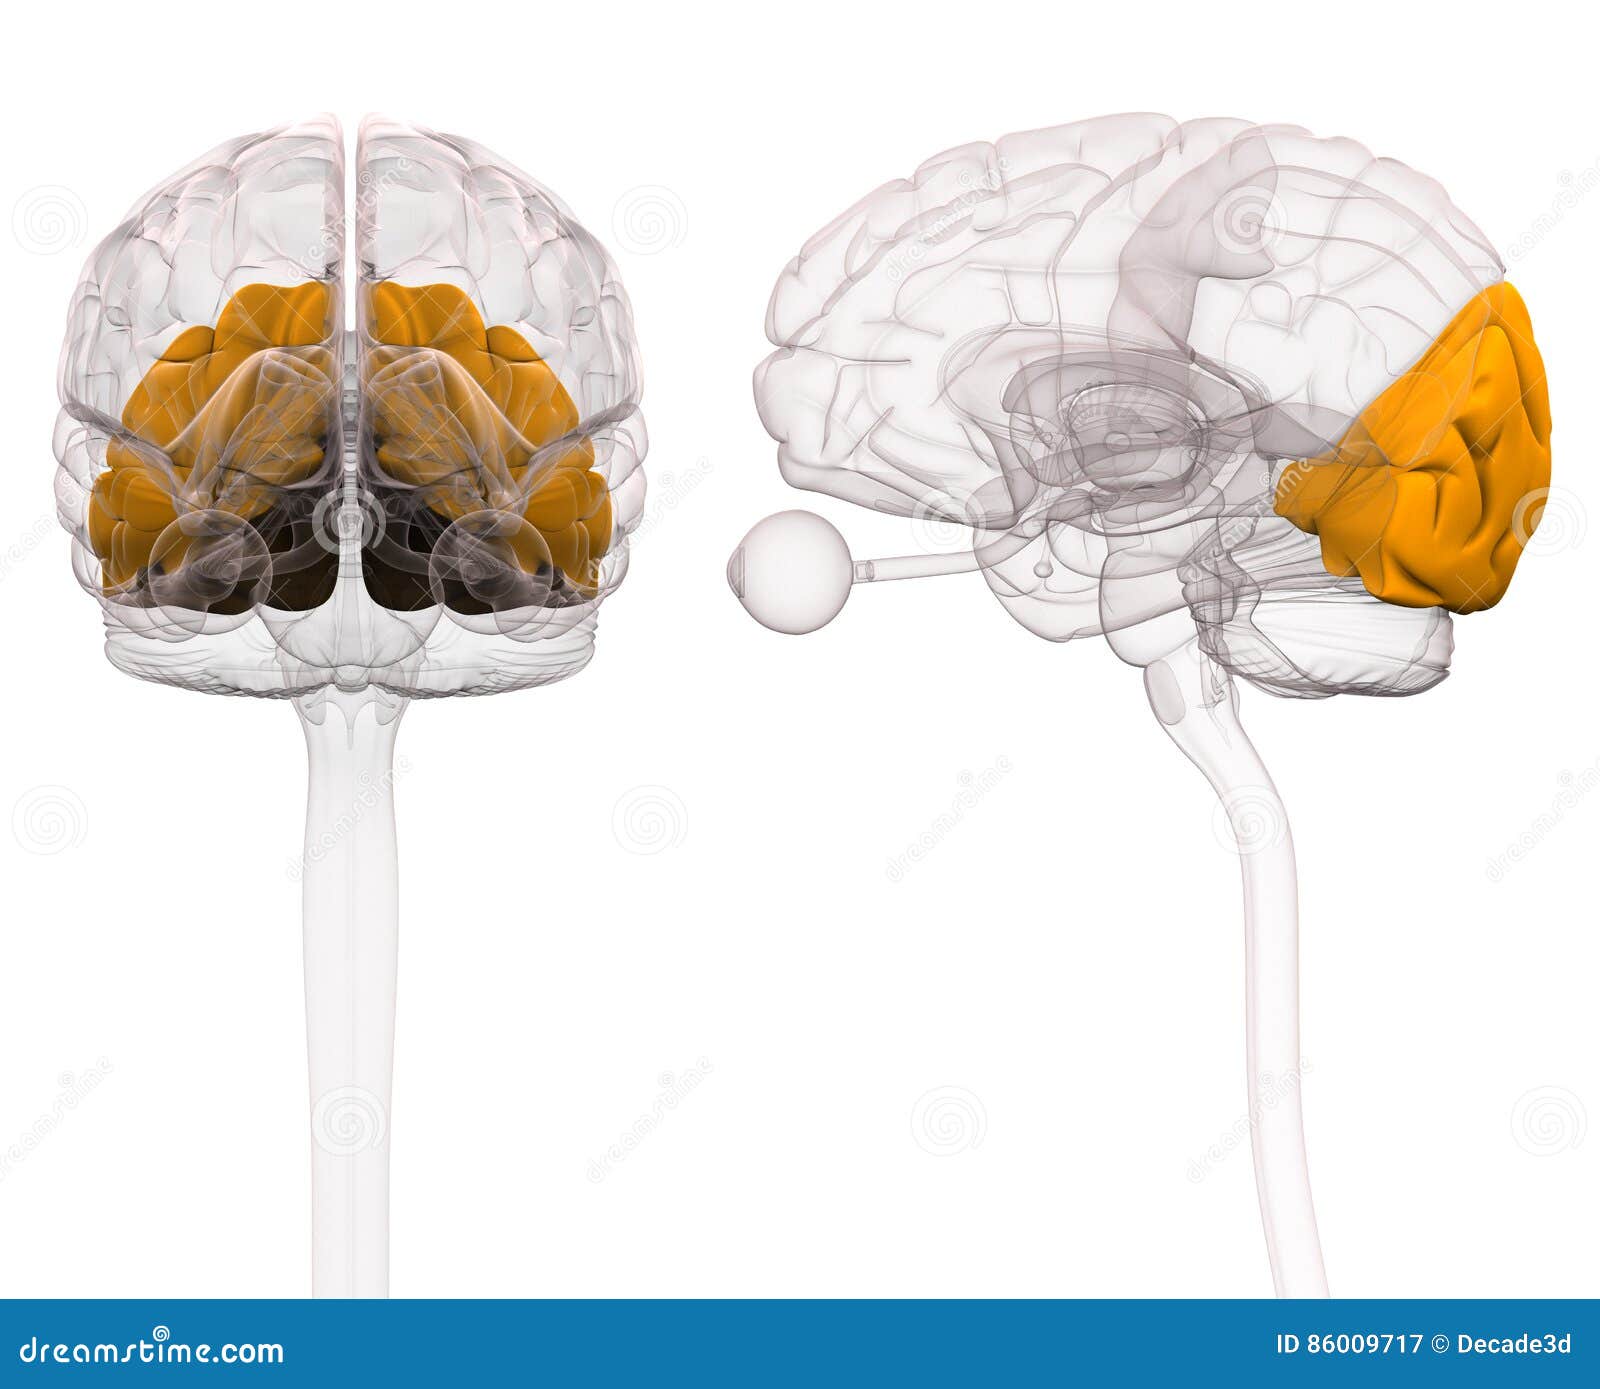 occipital brain anatomy - 3d 